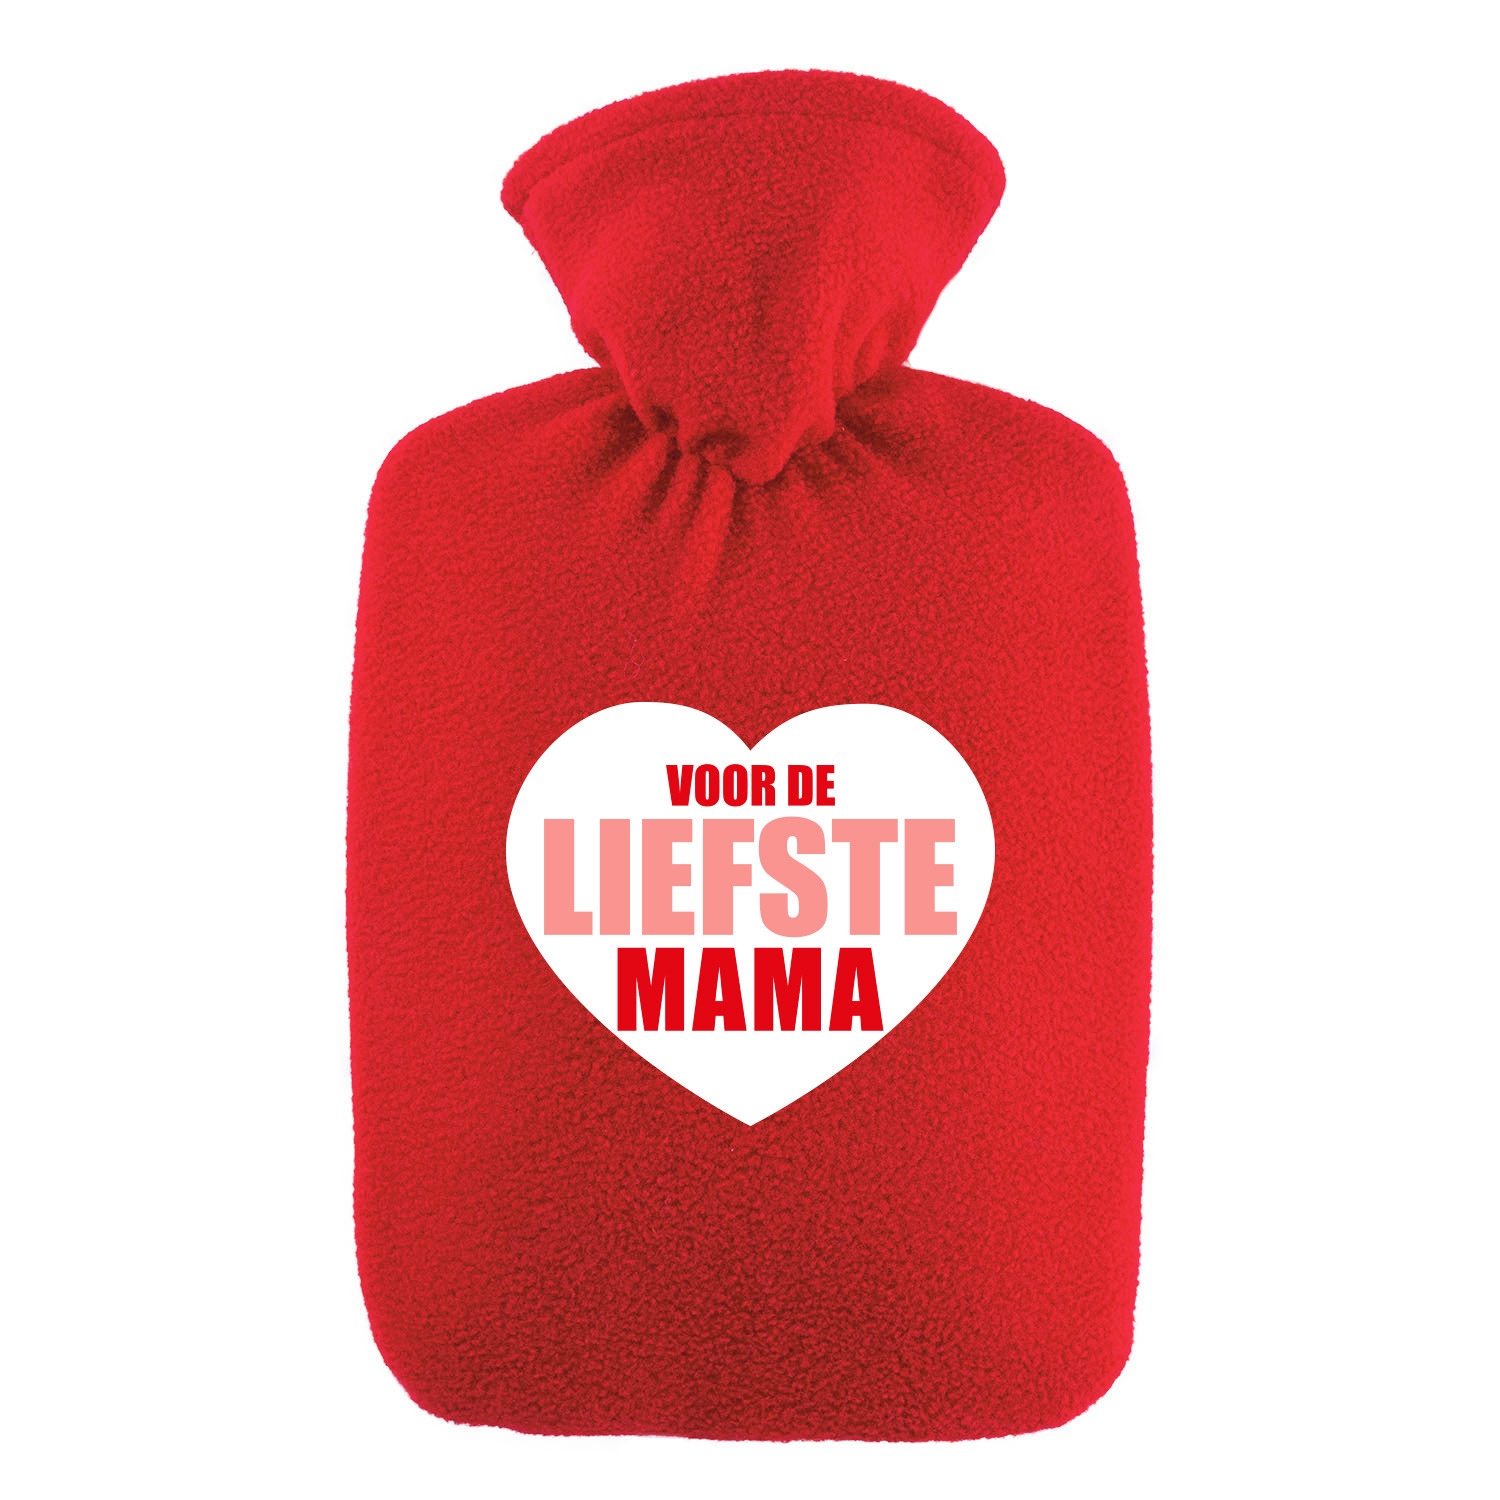 Voor de liefste mama kruik- warmwaterkruik rood 1,8 liter met fleece hoes